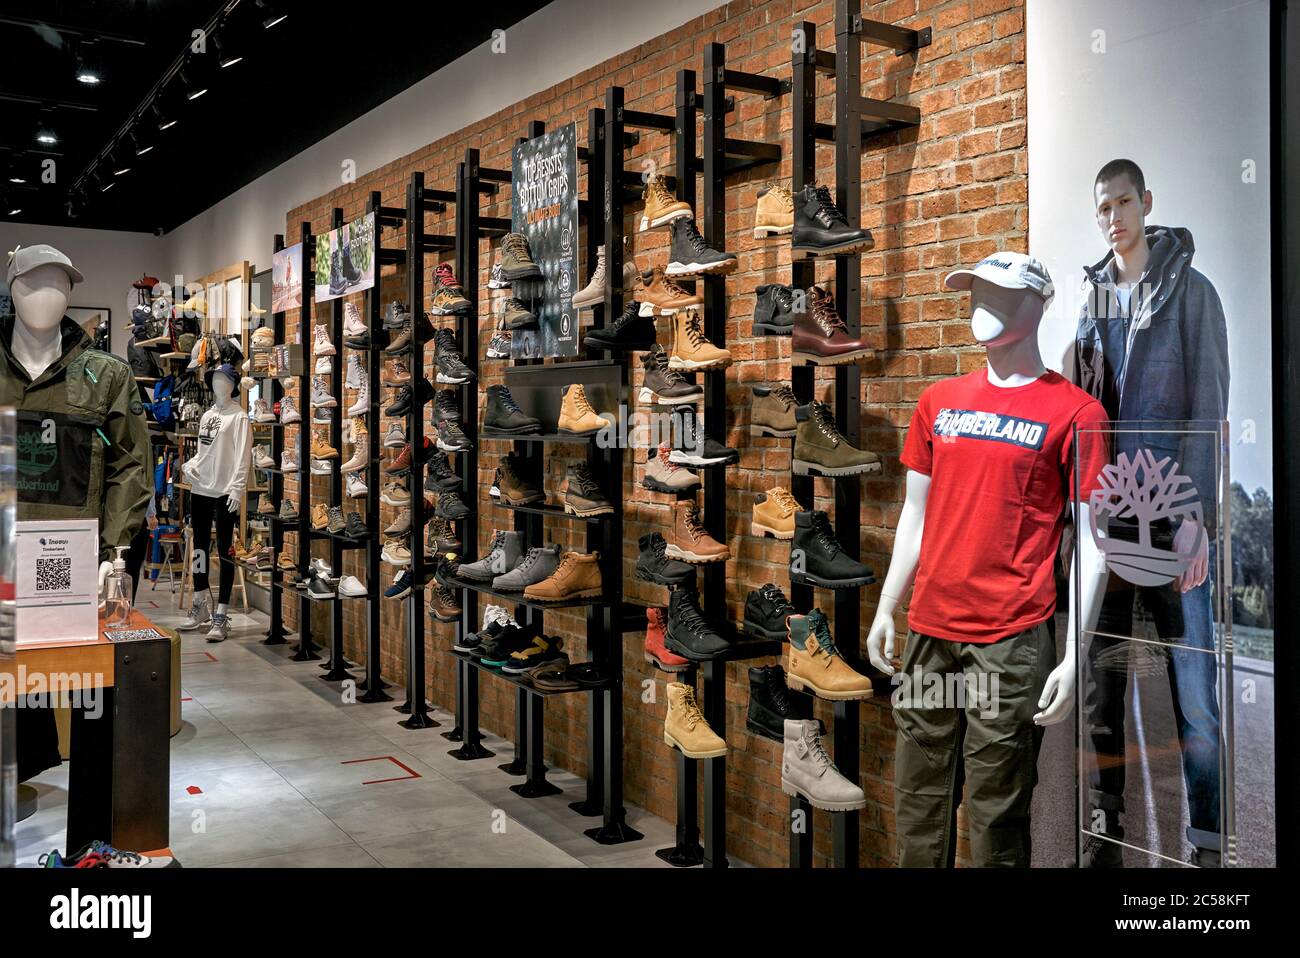 Intérieur de magasin Timberland. Vêtements et chaussures pour hommes.  Boutique spécialisée en plein air Photo Stock - Alamy